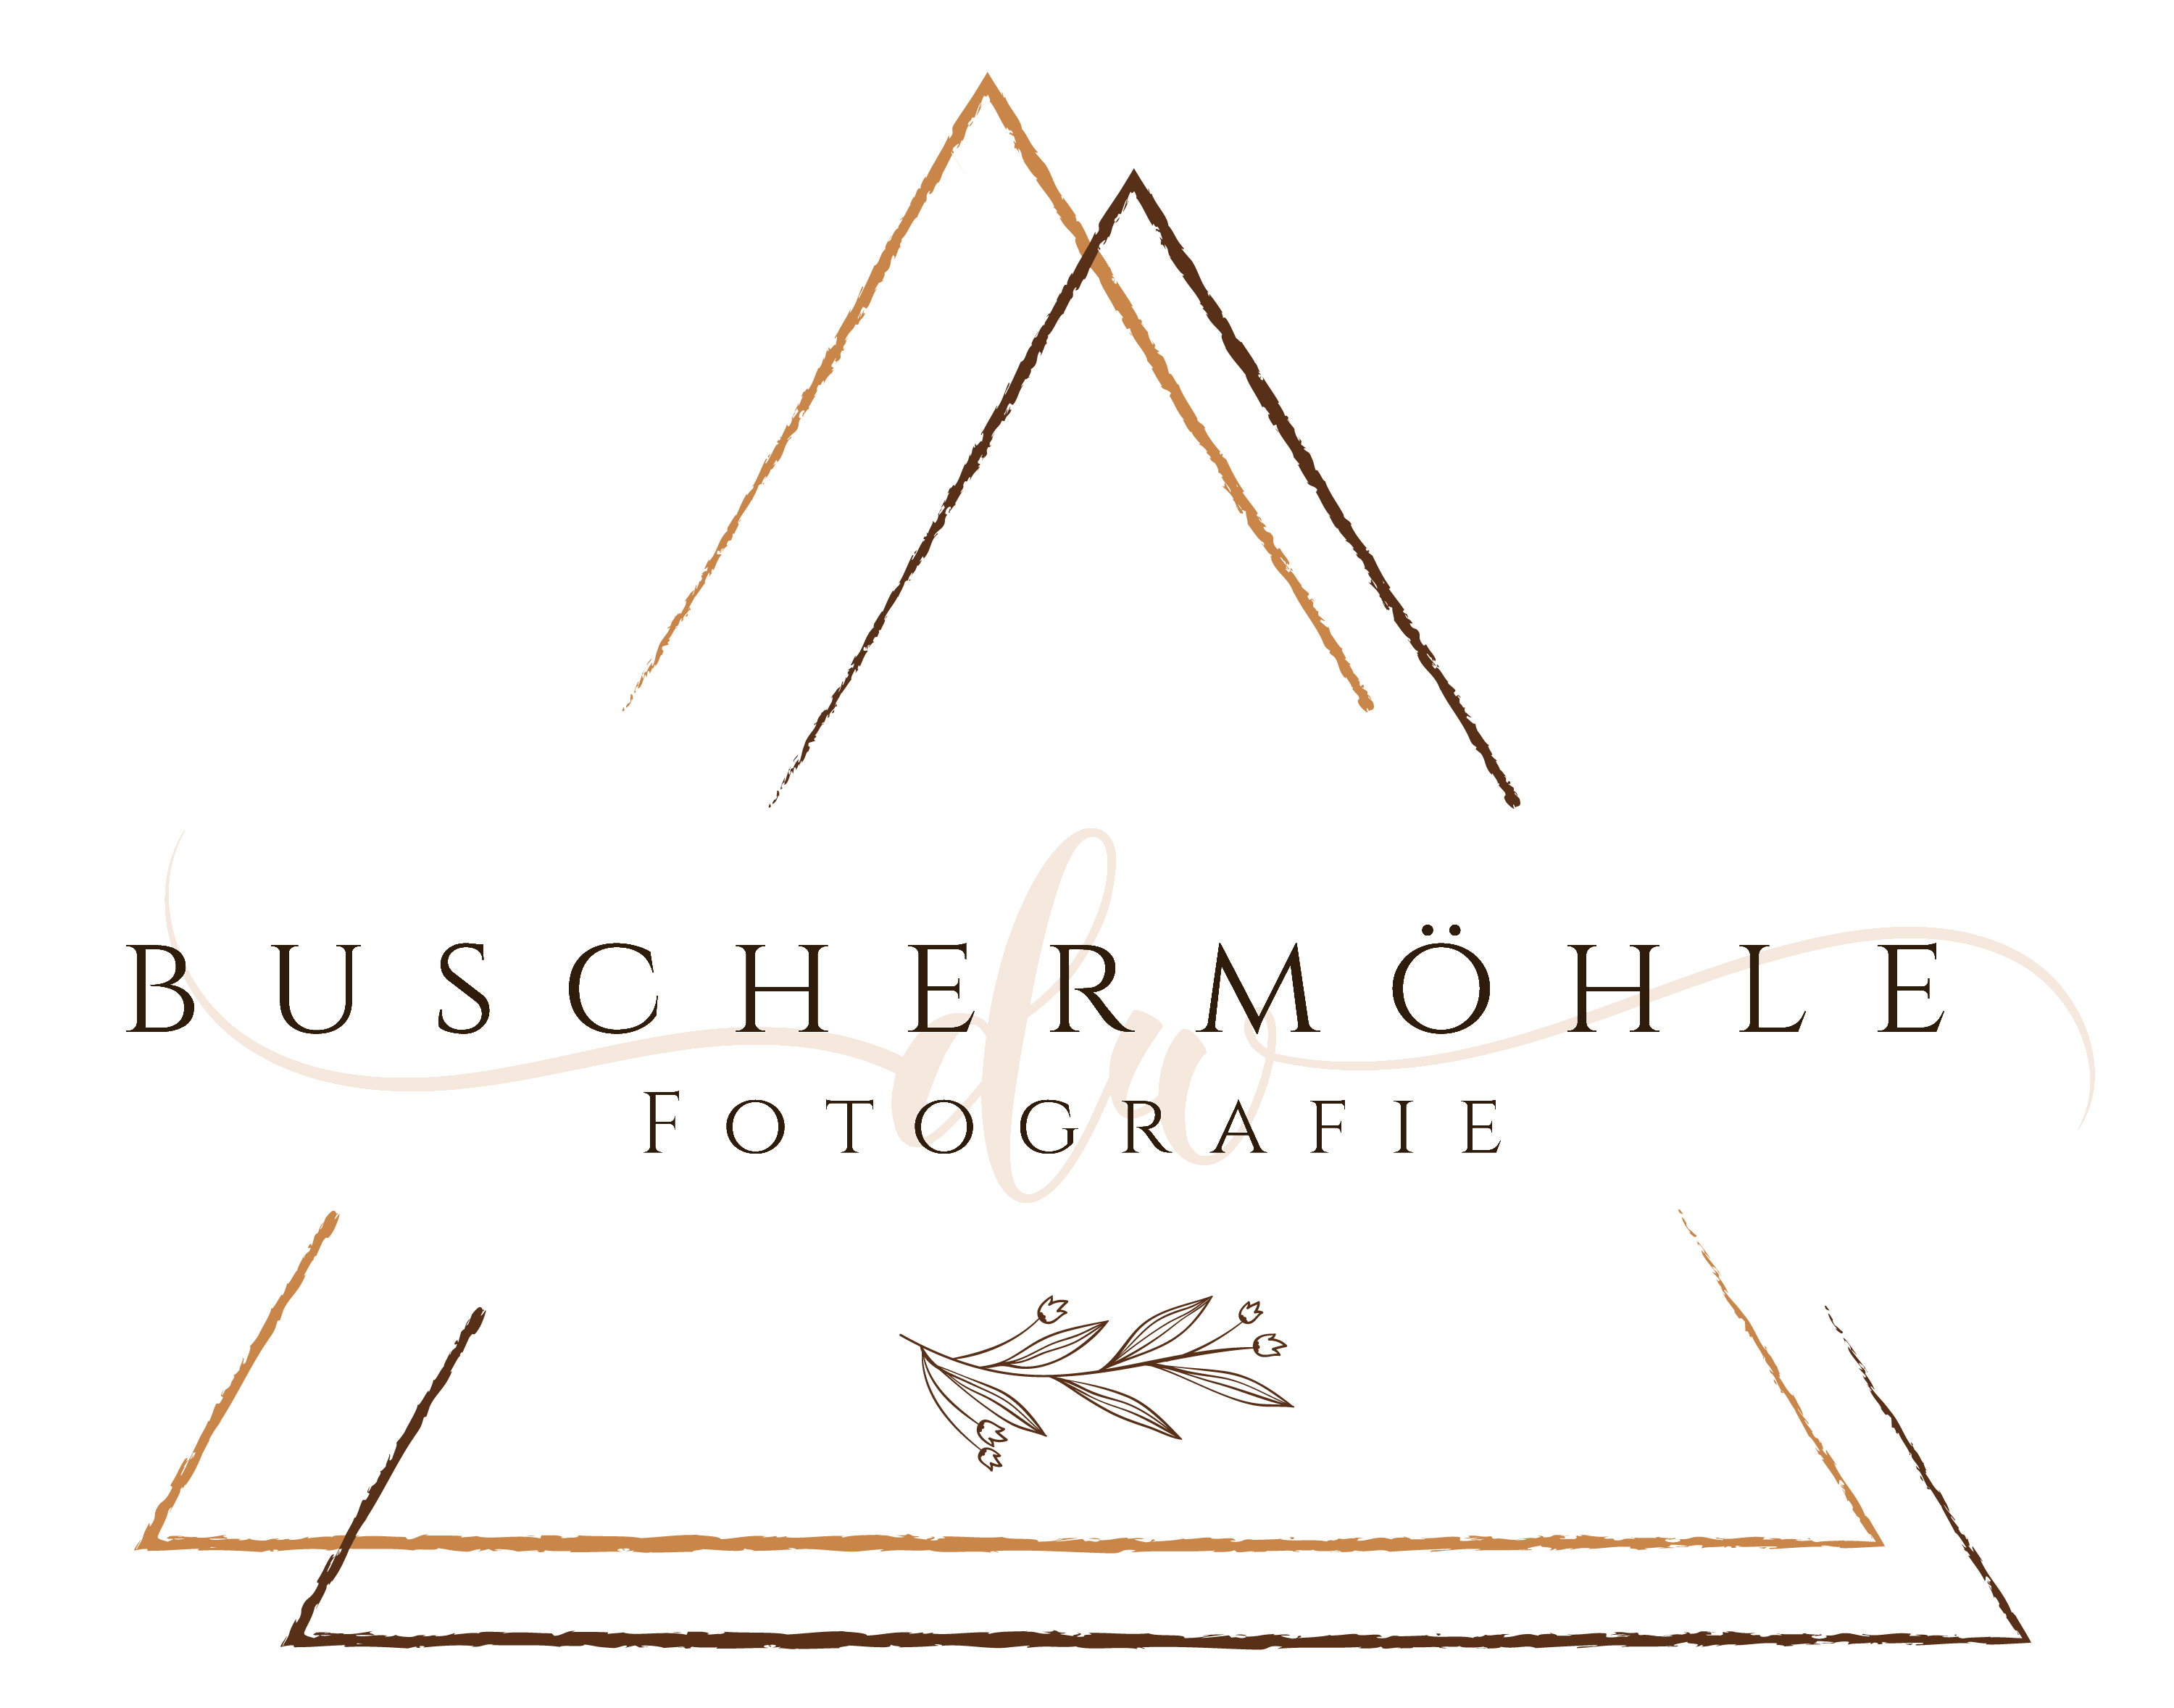 Buschermöhle Fotografie